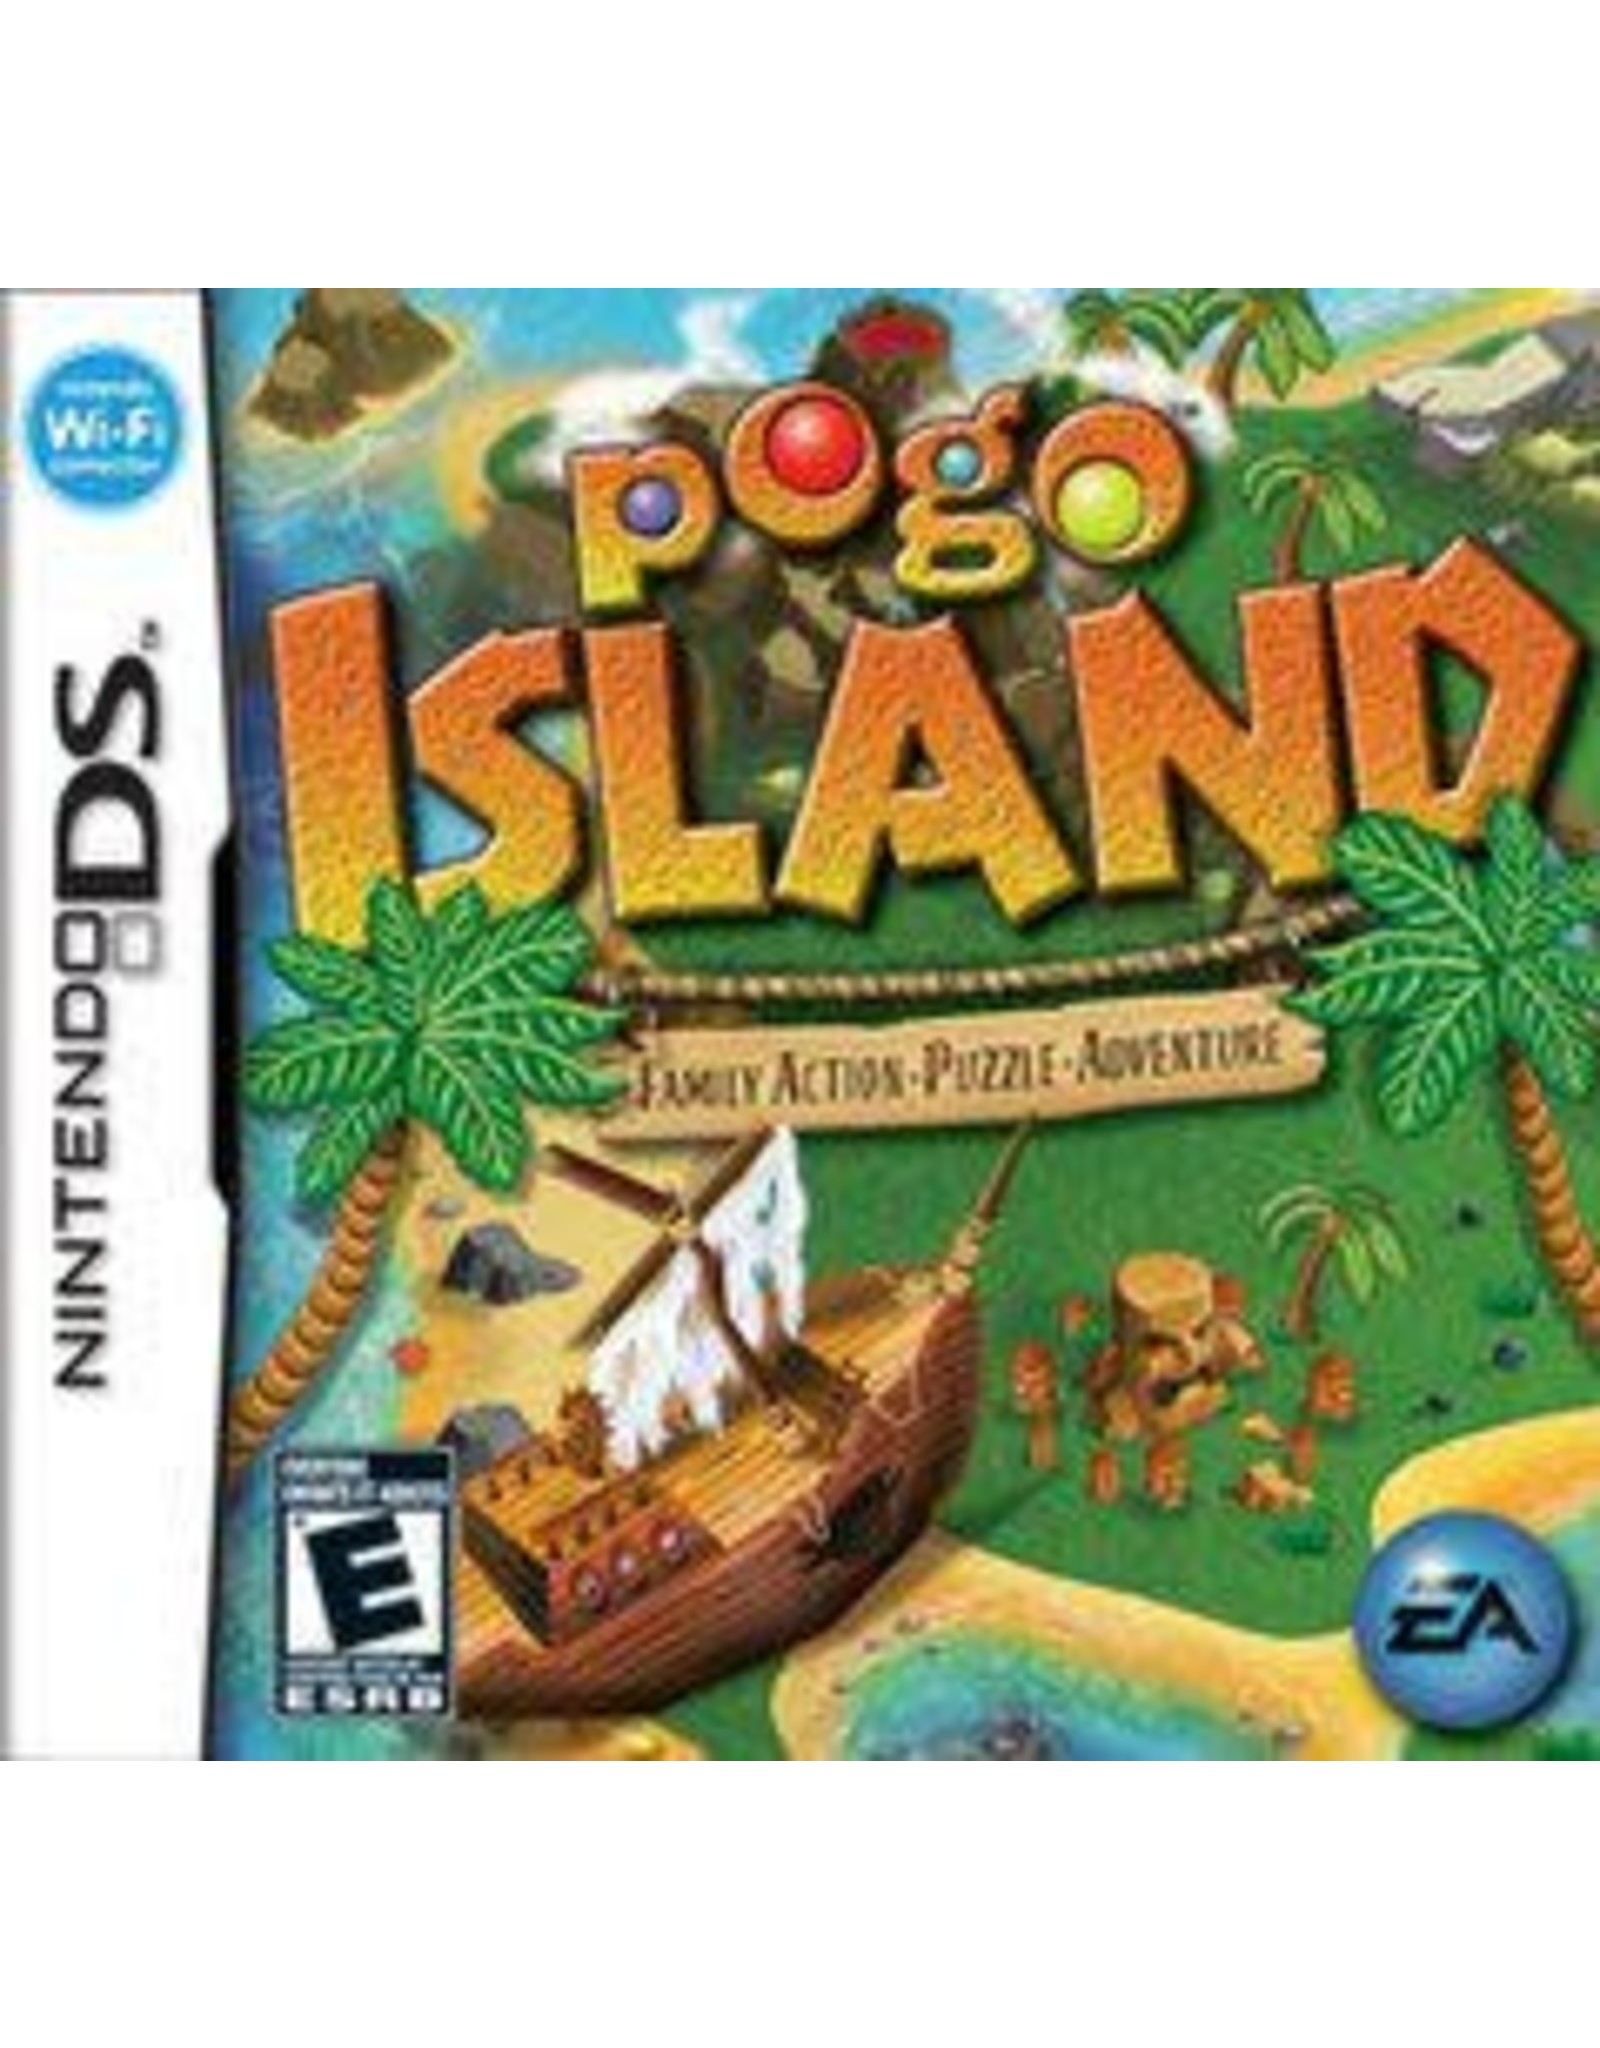 Nintendo DS POGO Island (CiB)